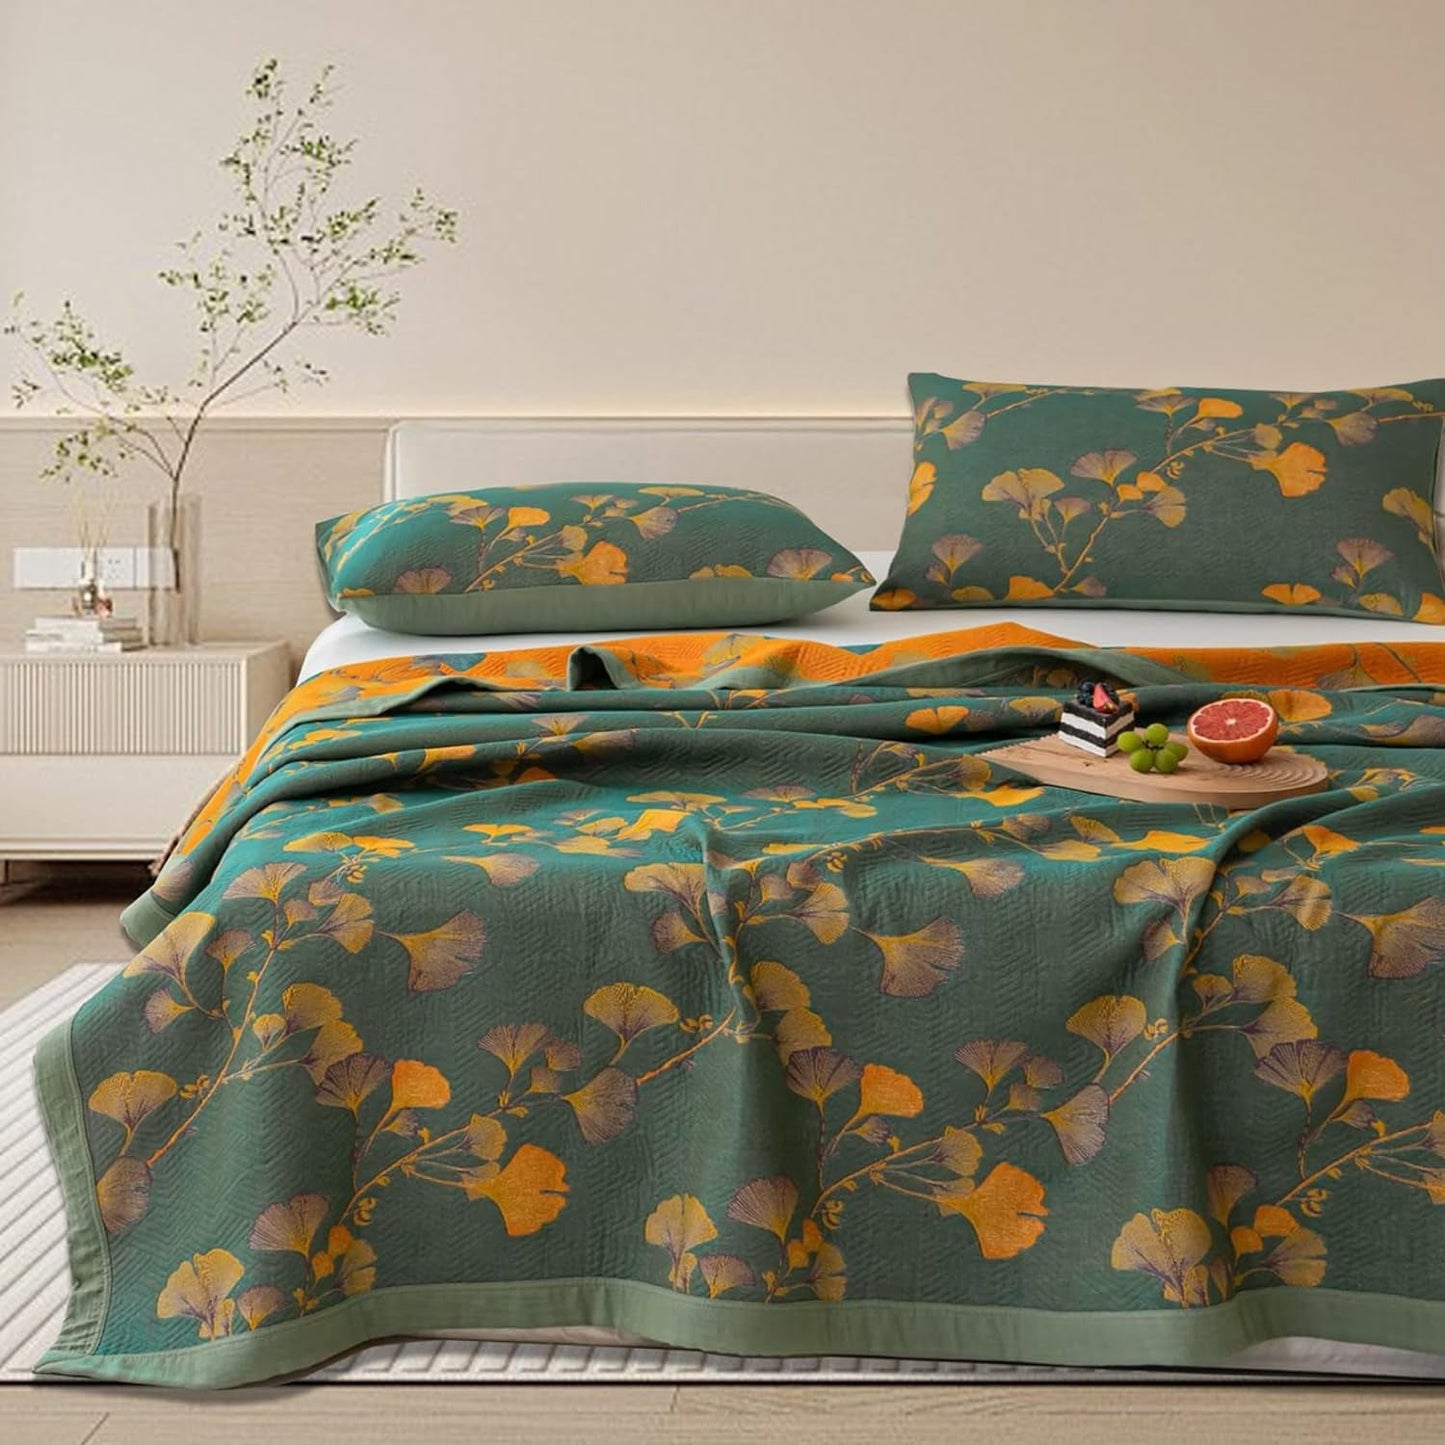 3 Piece Ginkgo Quilt Set with 2 Pillow Shams Queen Reversible Cotton Quilt Bedding Set Lightweight Bedspread Coverlet Sets Queen Size (Queen Quilt)